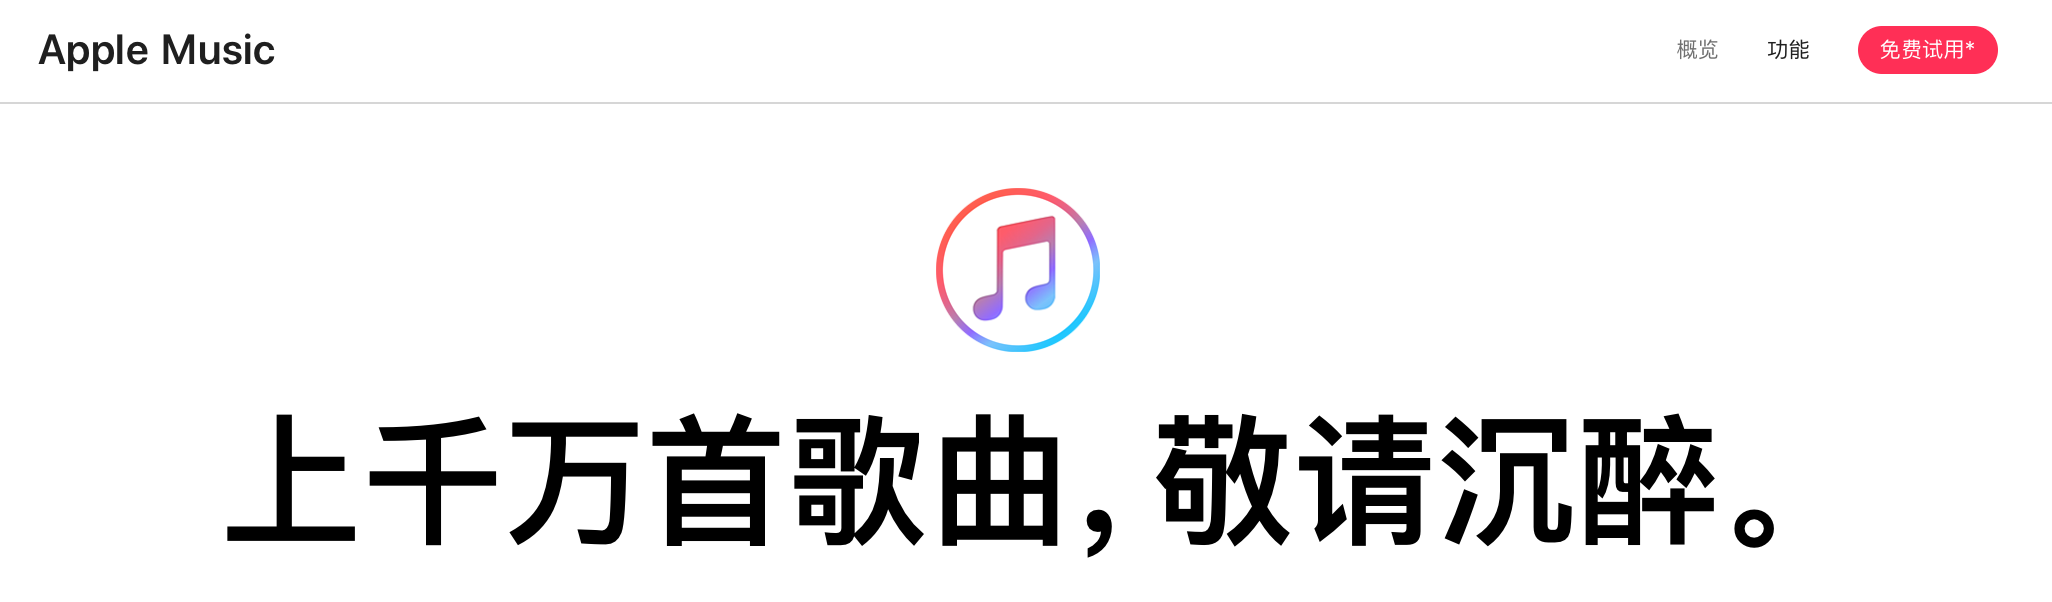 订阅 Apple Music 该选哪个区？——中美坡港日五大地区全对比